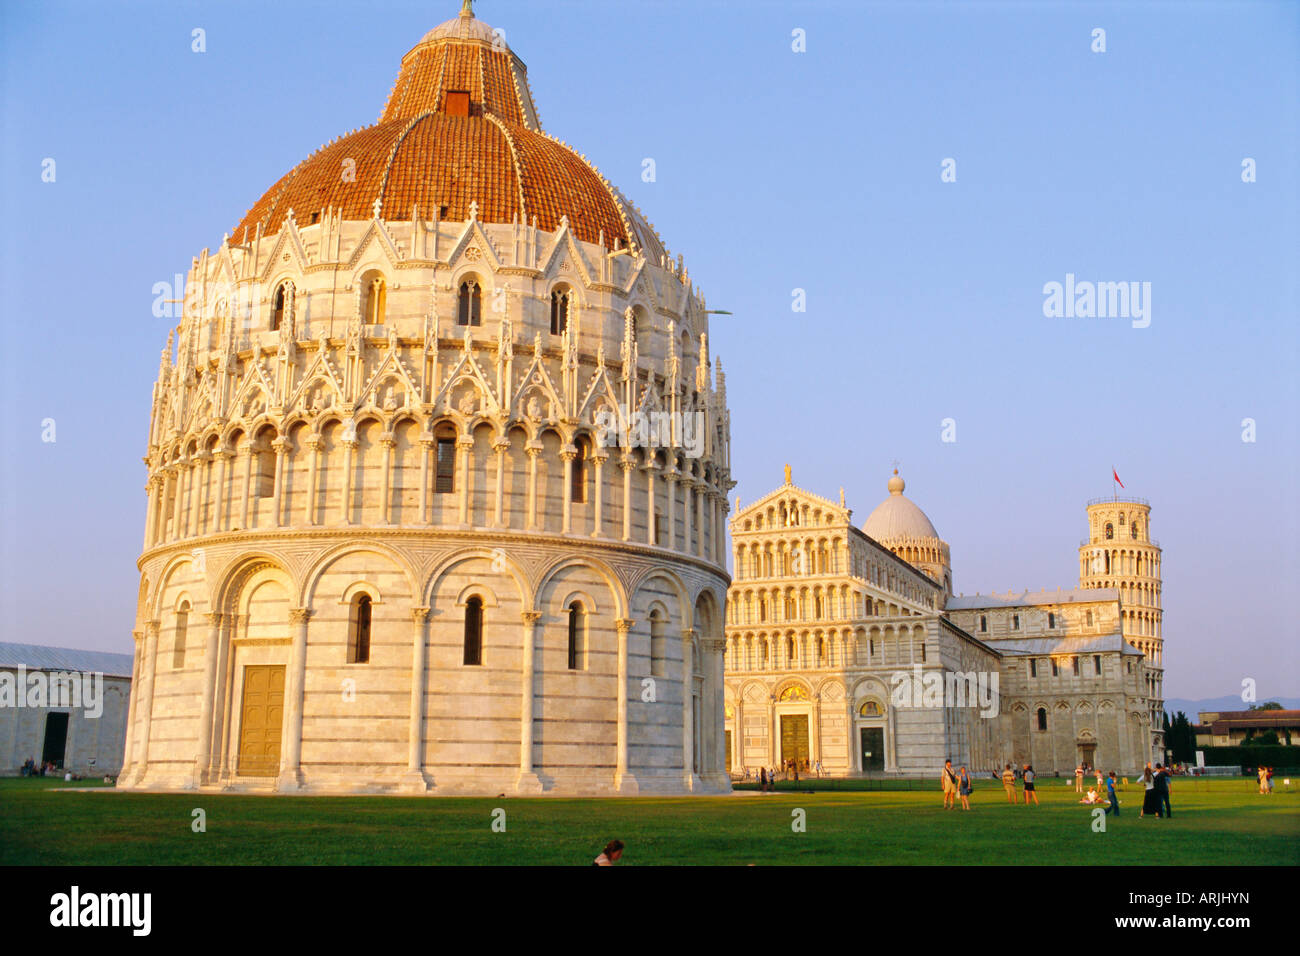 Campo dei Miracoli, Battistero (Baptistry), Duomo and Leaning Tower, Pisa, Tuscany, Italy Stock Photo